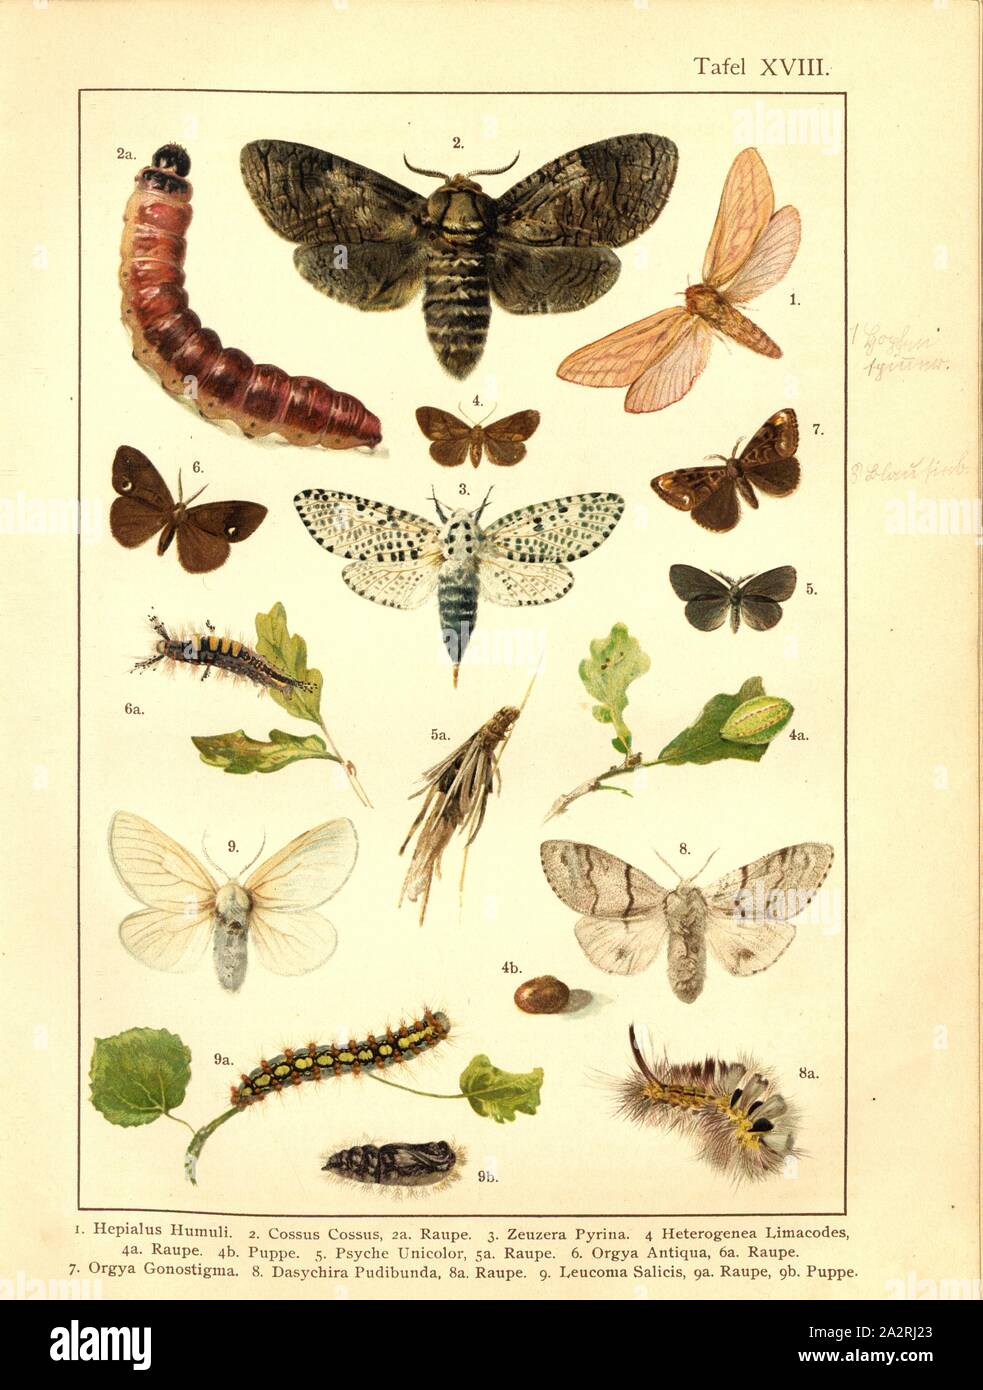 Butterflies, caterpillars and pupae in Central Europe 10, Hepialus Humuli, Cossus Cossus, Zeuzera Pyrina, Heterogenea Limacodes, Psyche Unicolor, Orgya Antiqua, Orgya Gonostigma, Dasychira Pudibunda, Leucoma Salicis, Plate XVIII, after p. 76, Deuchert, Heinrich (del. ad. nat.); Slocombe, A. (del. ad nat.), 1893, Max Korb; Heinrich Deuchert; A. Slocombe: Die Schmetterlinge Mittel-Europas: Darstellung und Beschreibung der hauptsächlichen mitteleuropäischen Schmetterlinge nebst Anleitung, dieselben zu fangen oder zu züchten und eine Sammlung anzulegen. Nürnberg: Theo. Stroeser's Kunstverlag, [ Stock Photo